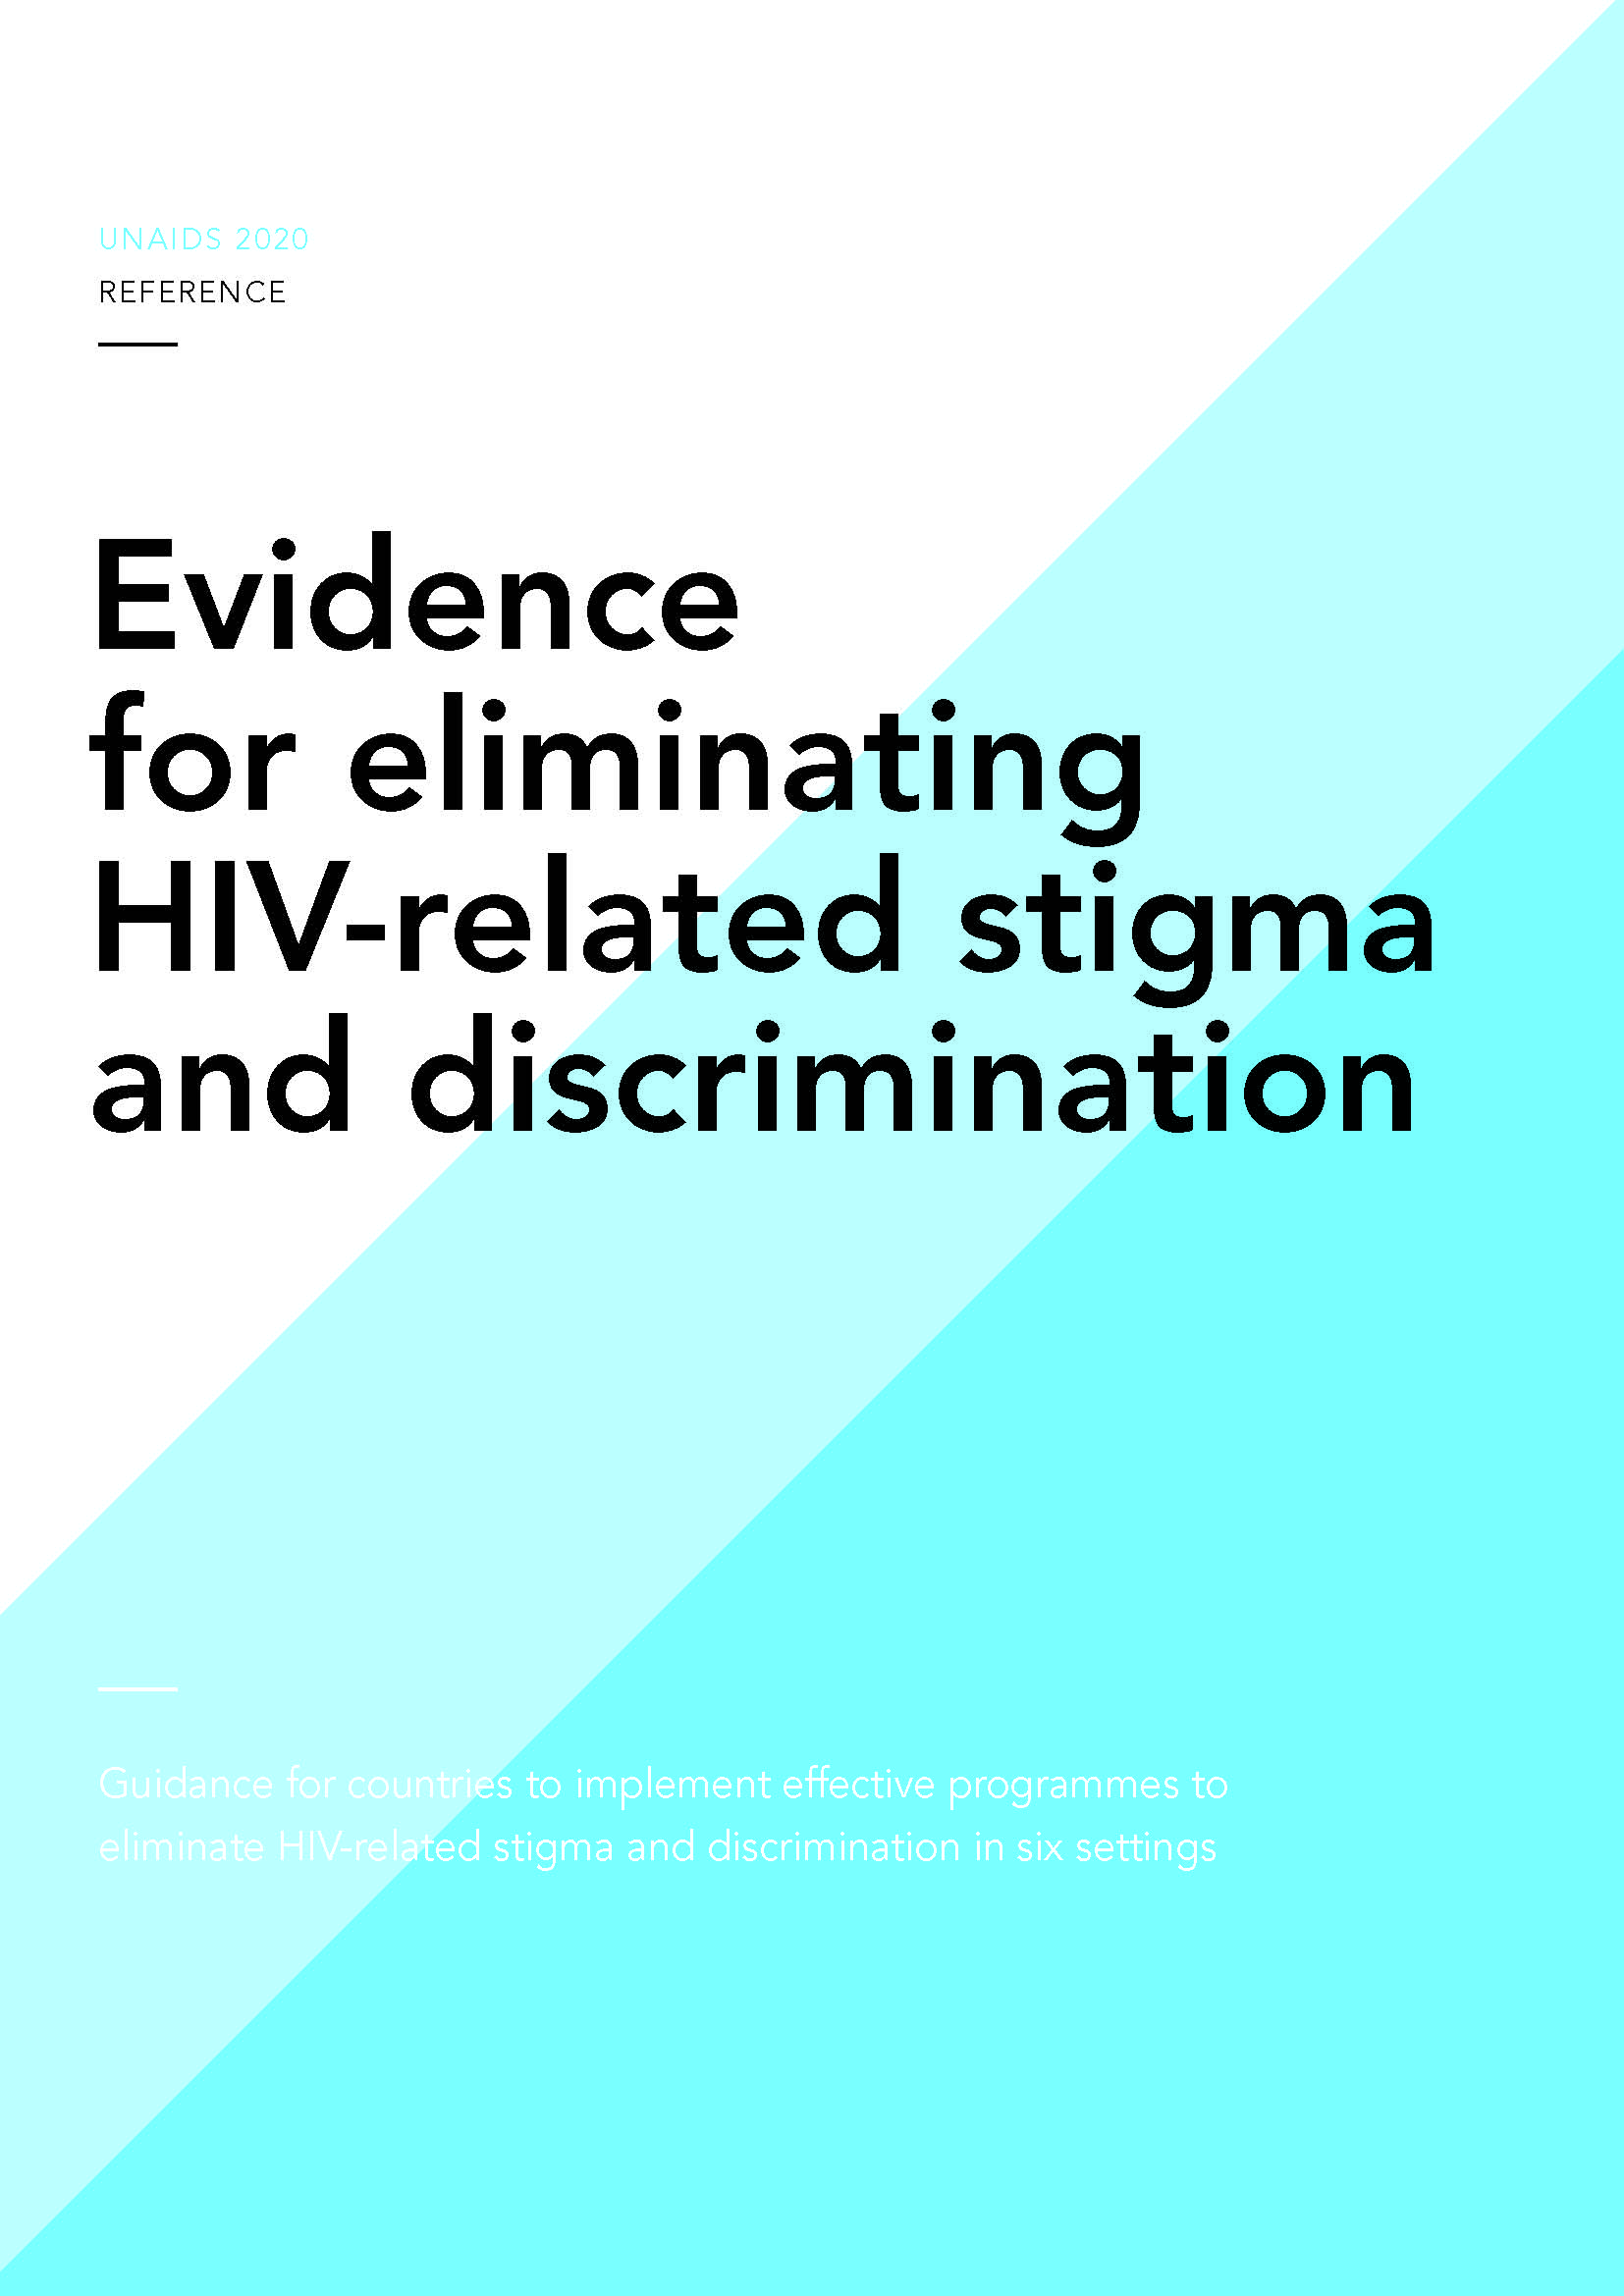 las pruebas que eliminan el estigma y la discriminación cubren